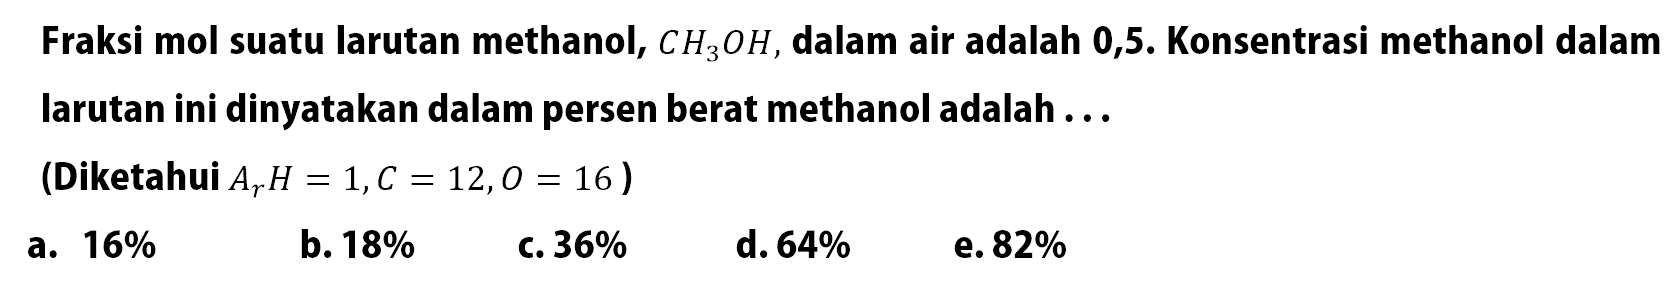 Fraksi mol suatu larutan methanol, CH3OH, dalam air adalah 0,5. Konsentrasi methanol dalam larutan ini dinyatakan dalam persen berat methanol adalah ...(Diketahui Ar H = 1, C = 12, O = 16 )